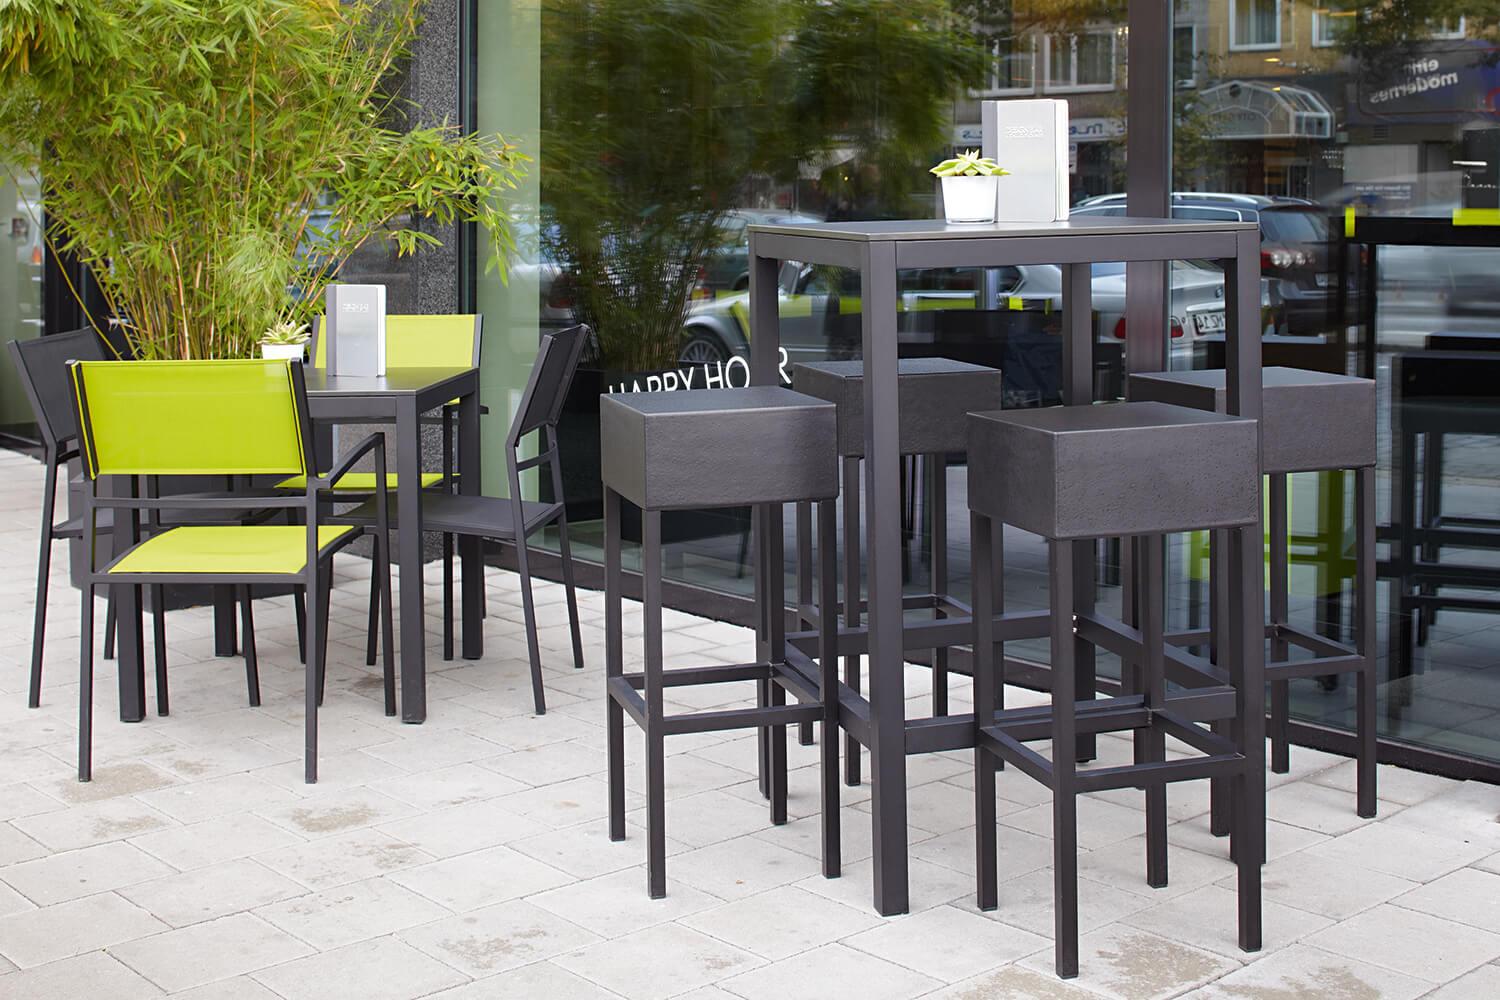 Cafe stuhl - Die qualitativsten Cafe stuhl unter die Lupe genommen